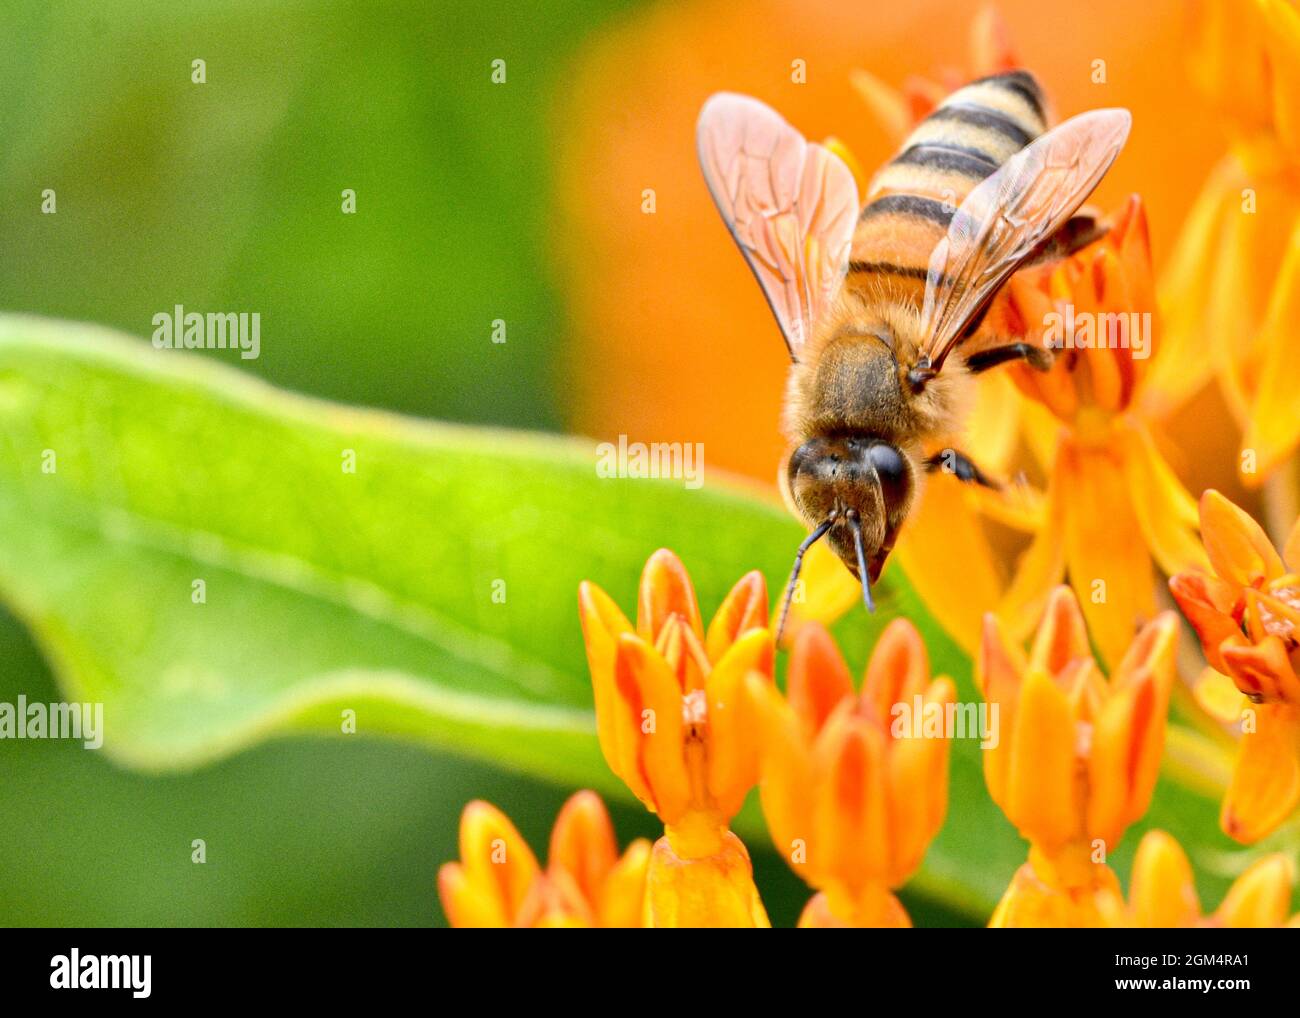 Abeille (APIS mellifera) collectant le nectar et le pollen d'une fleur de papillons (Asclepias tuberosa.) Gros plan. Banque D'Images